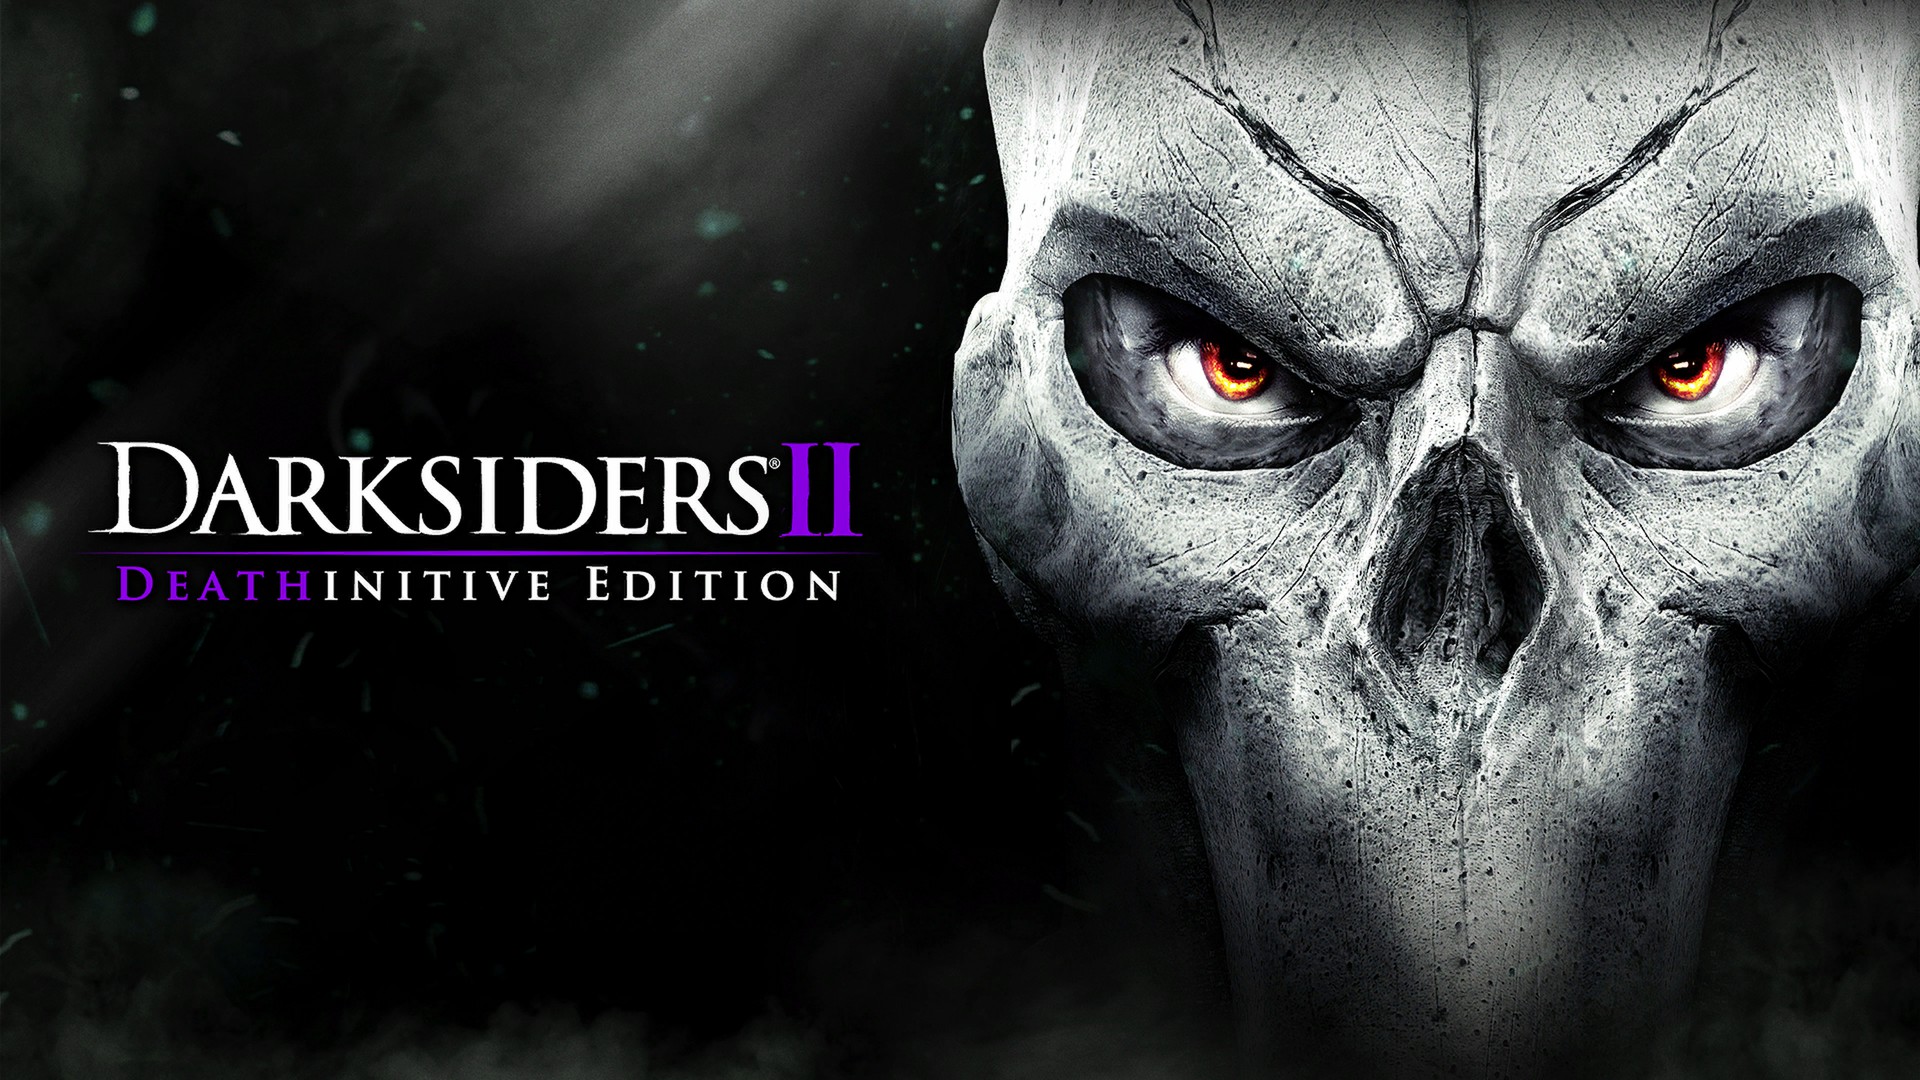 Darksiders 2 DE – PS4Wallpapers.com
